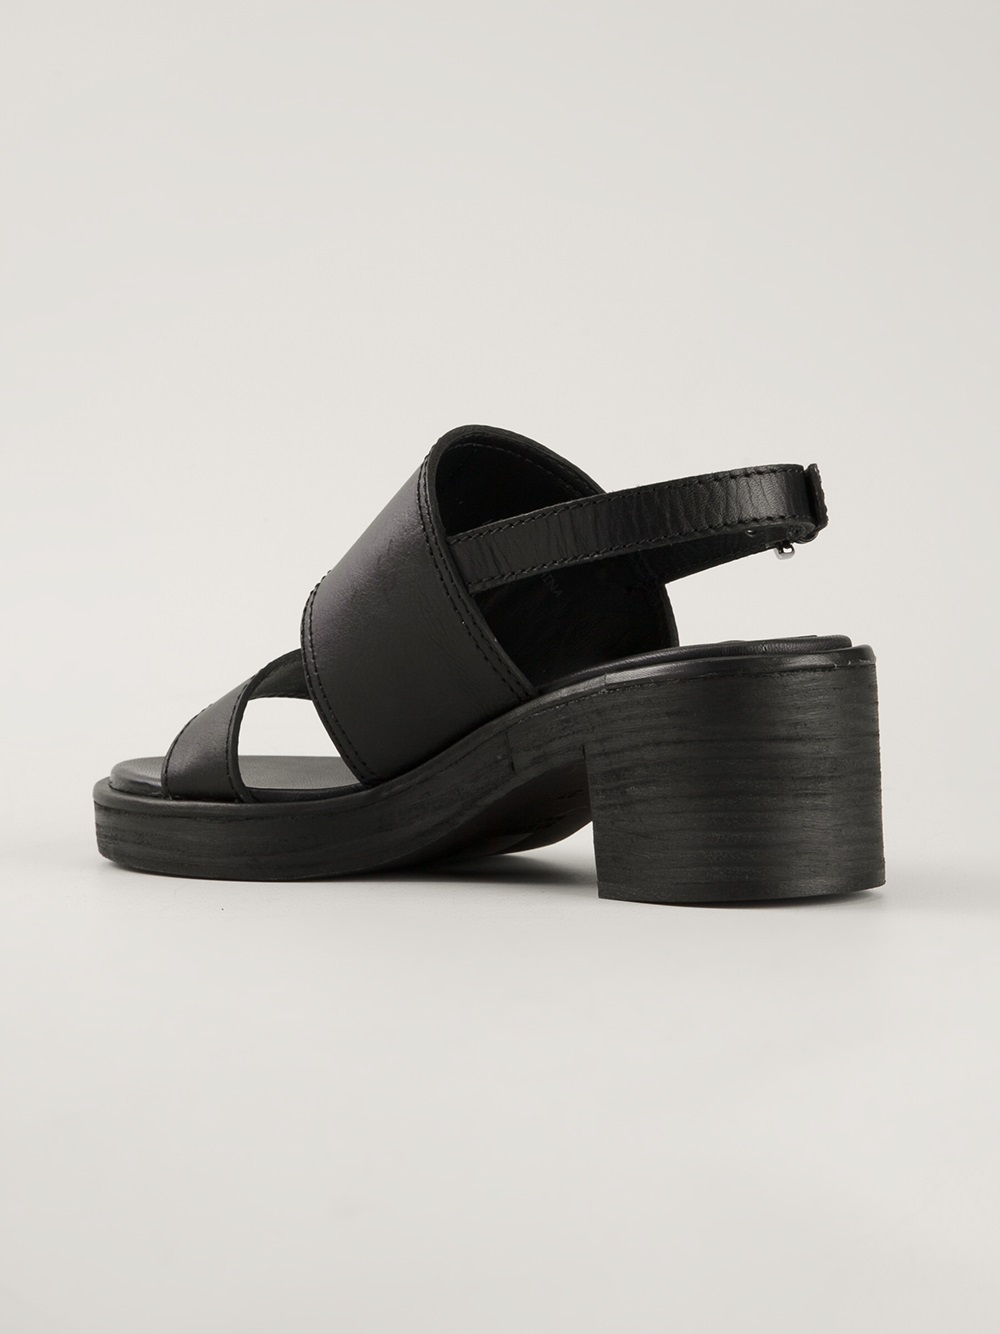 Lyst - Jil Sander Navy Chunky Heel Sandals in Black